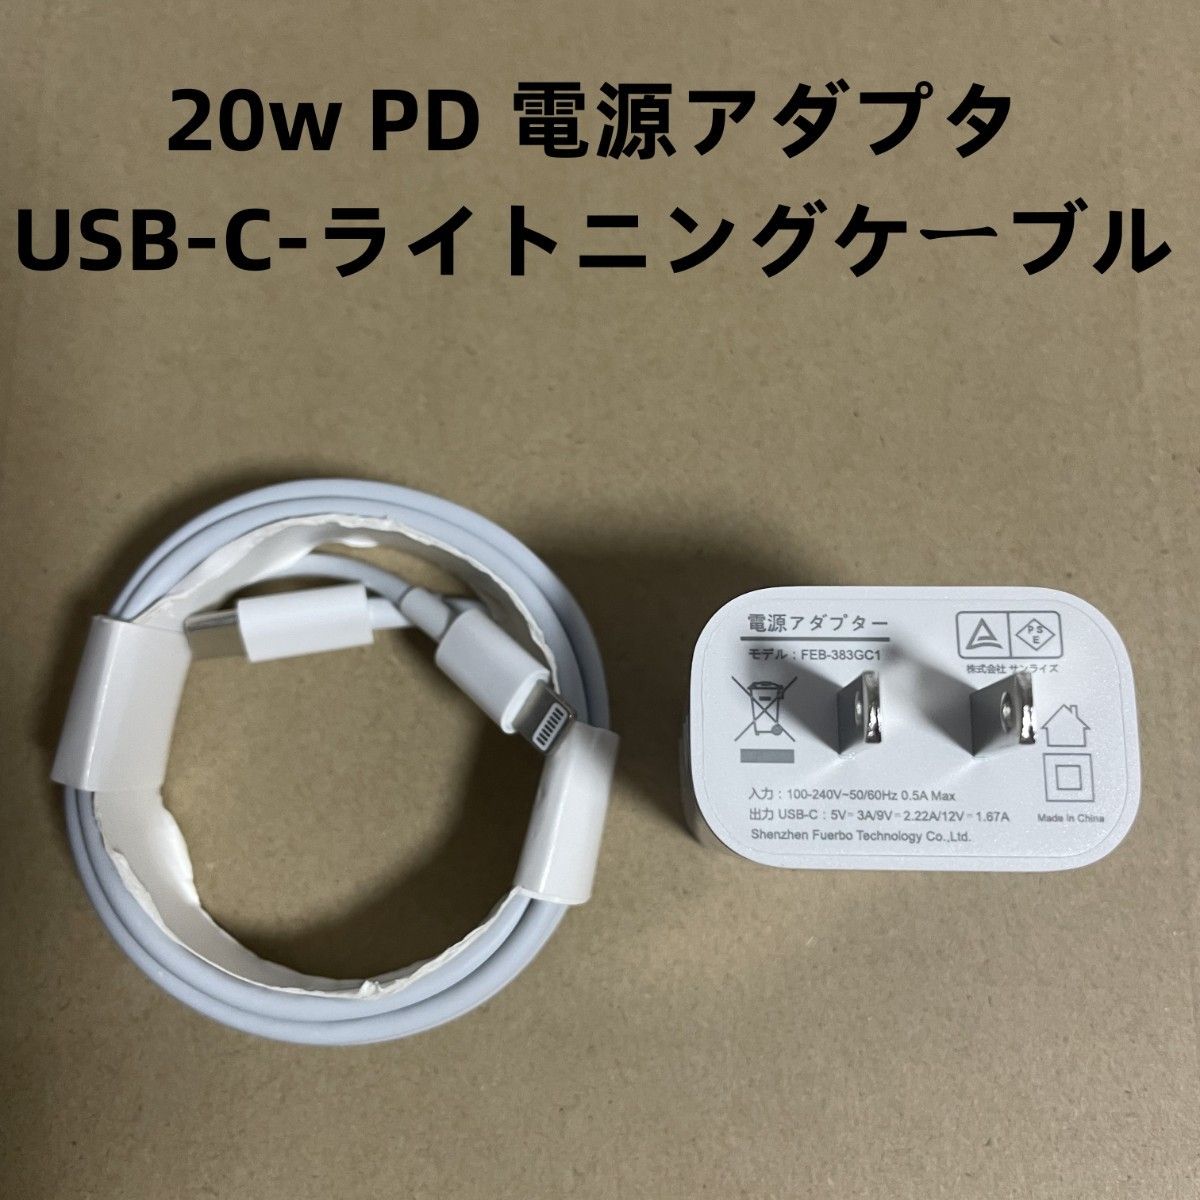 20w PD 電源アダプタ +USB-C-ライトニングケーブル 2m セットz